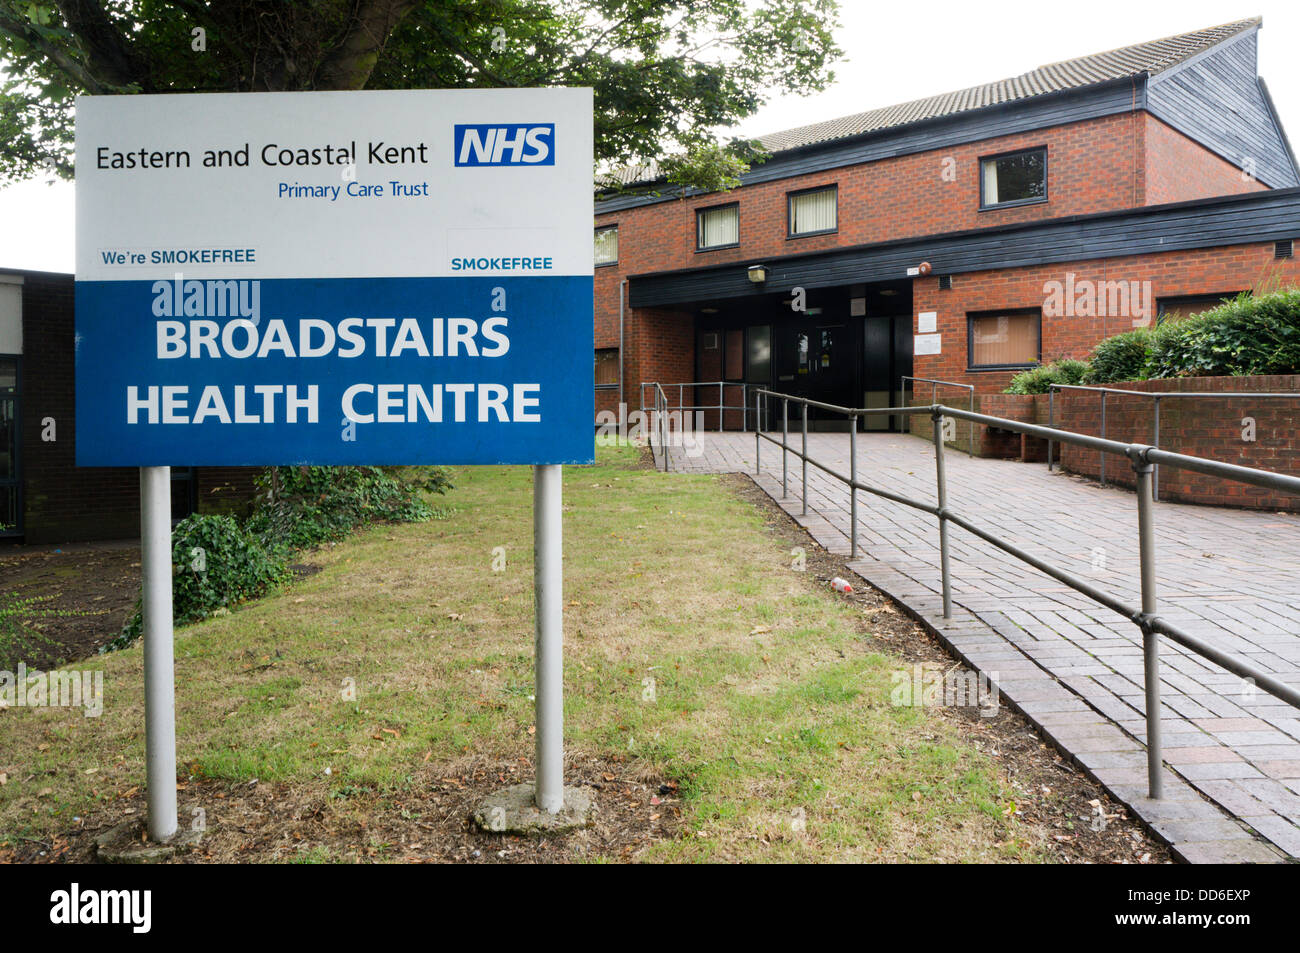 Segno per Broadstairs centro salute, una parte della parte orientale costiera e Kent Primary Care Trust. Foto Stock